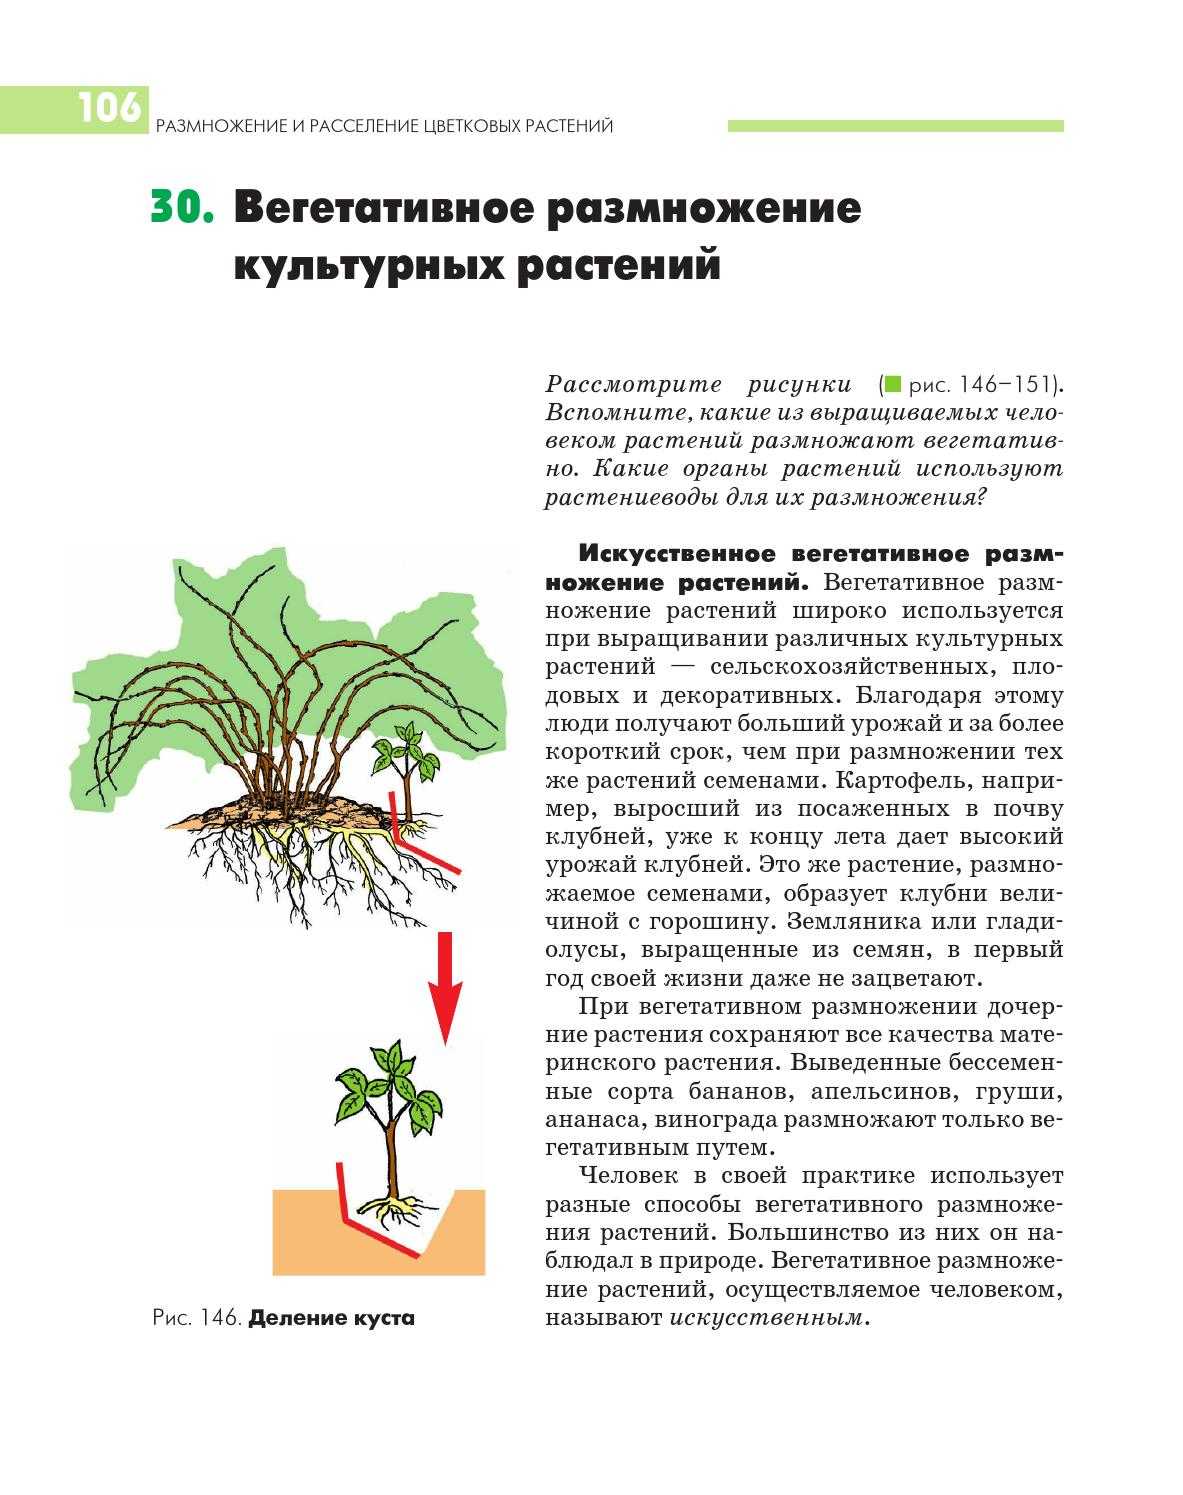 Вегетативное размножение покрытосеменных растений, тест с ответами, 6 класс